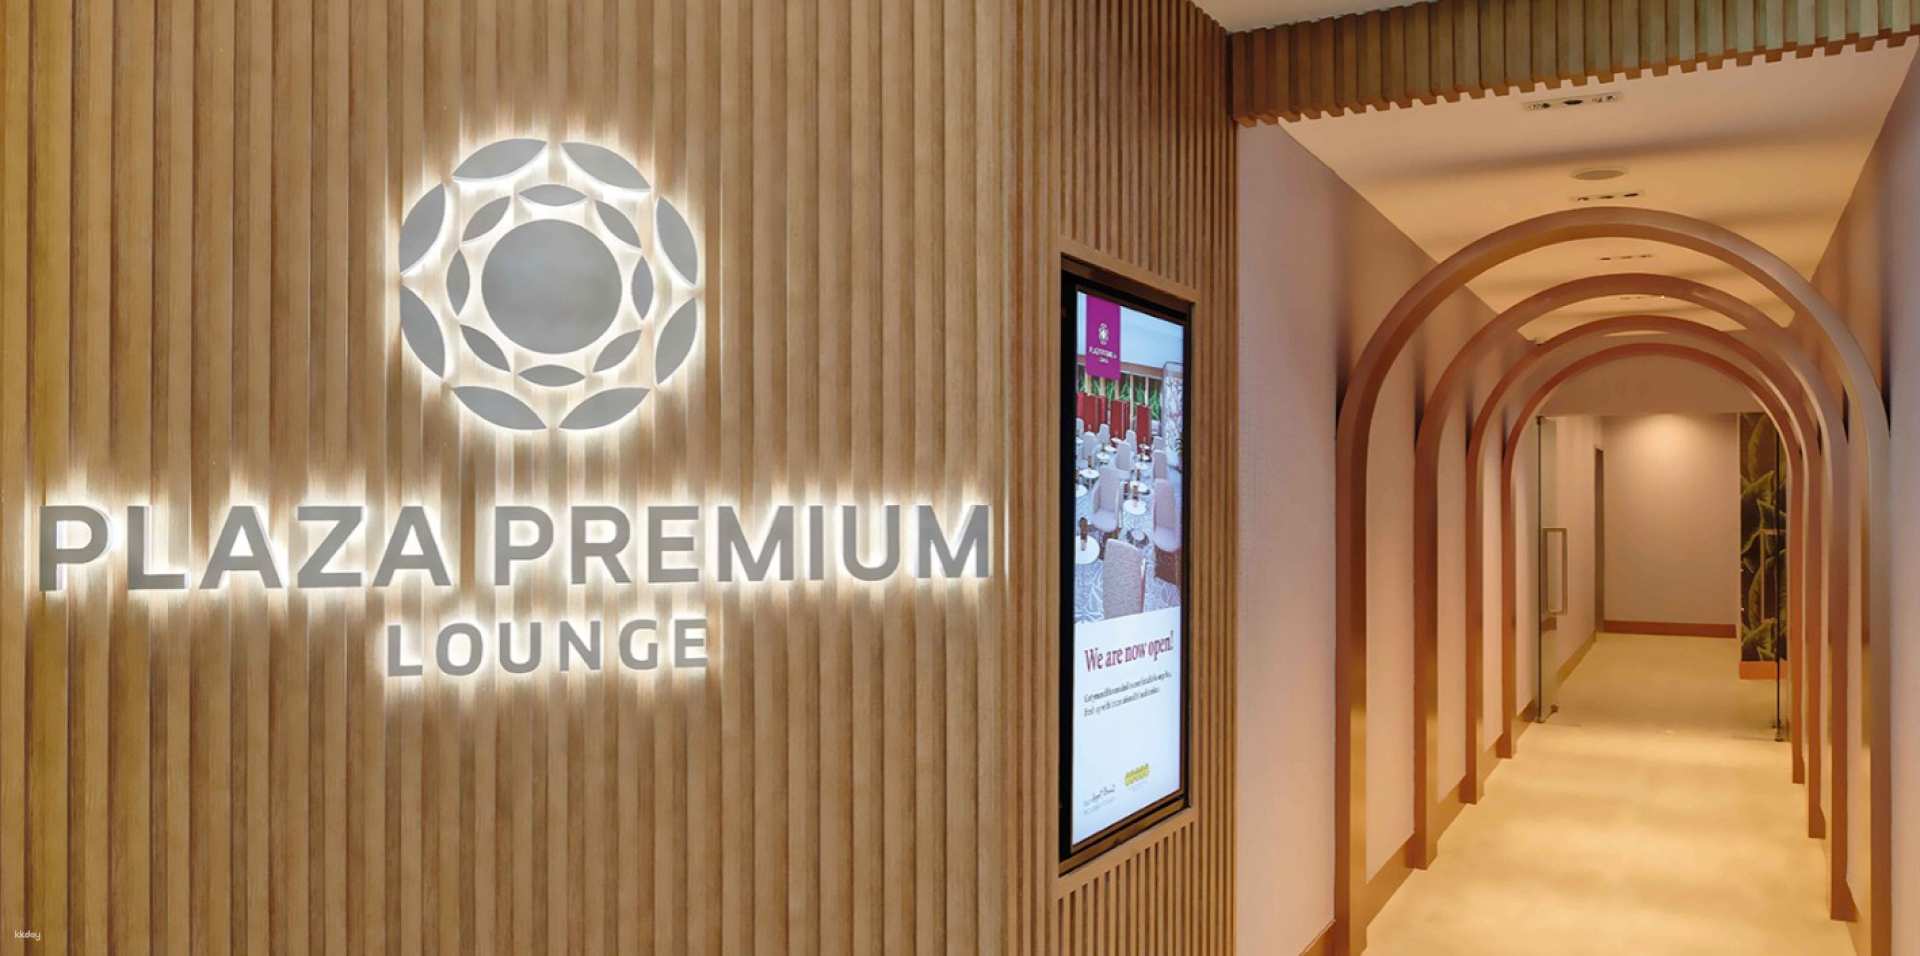 菲律賓-克拉克國際機場 (CRK)| 環亞機場貴賓室 Plaza Premium Lounge